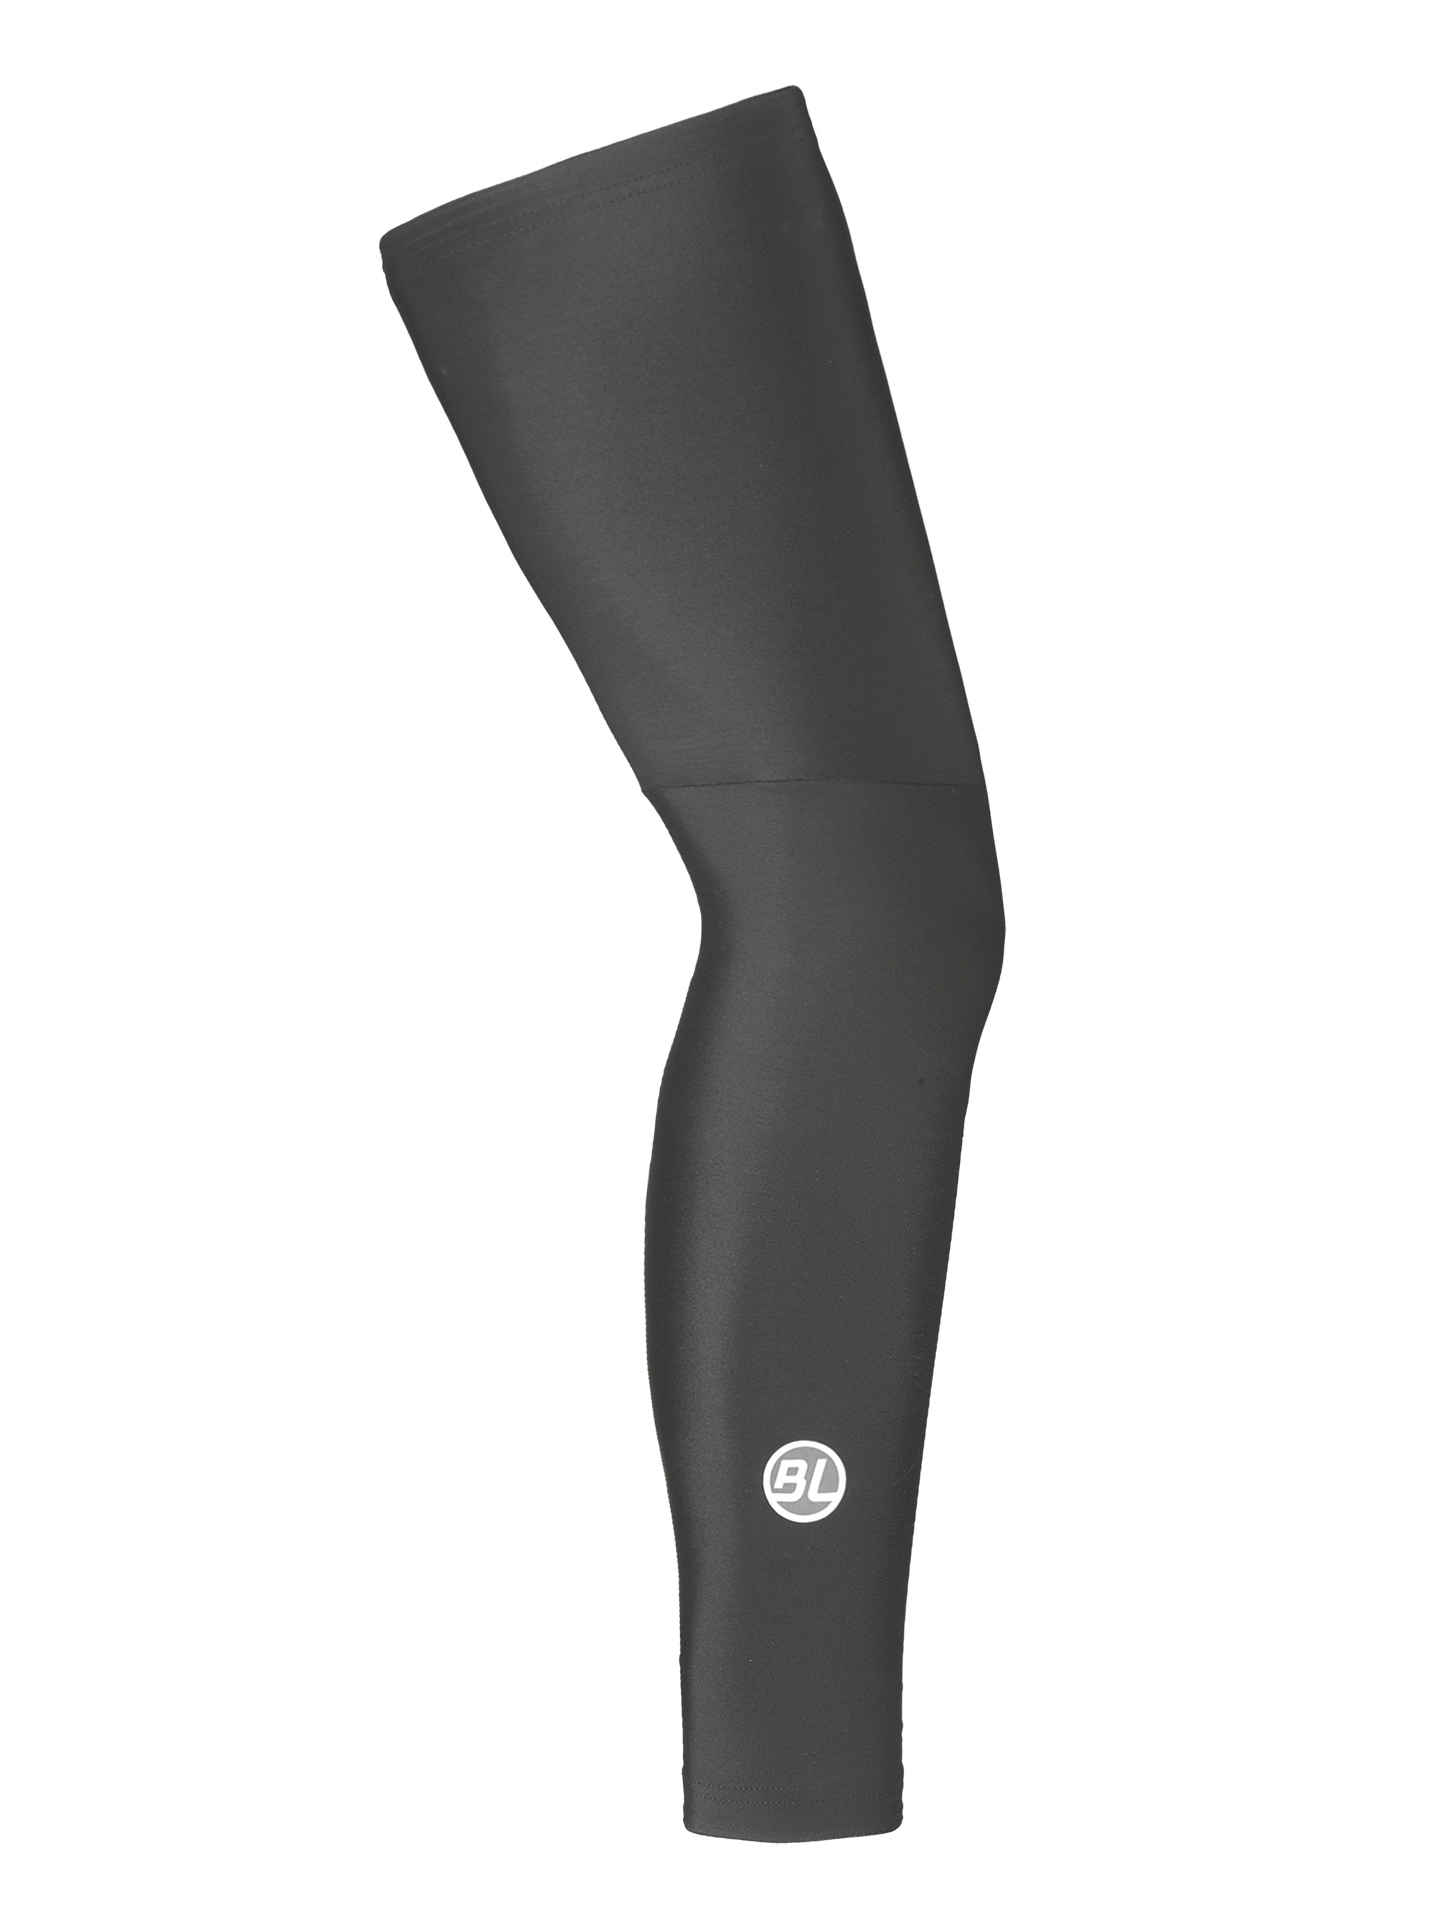 Утеплитель ног Bicycle Line FIANDRE, black (черный), S